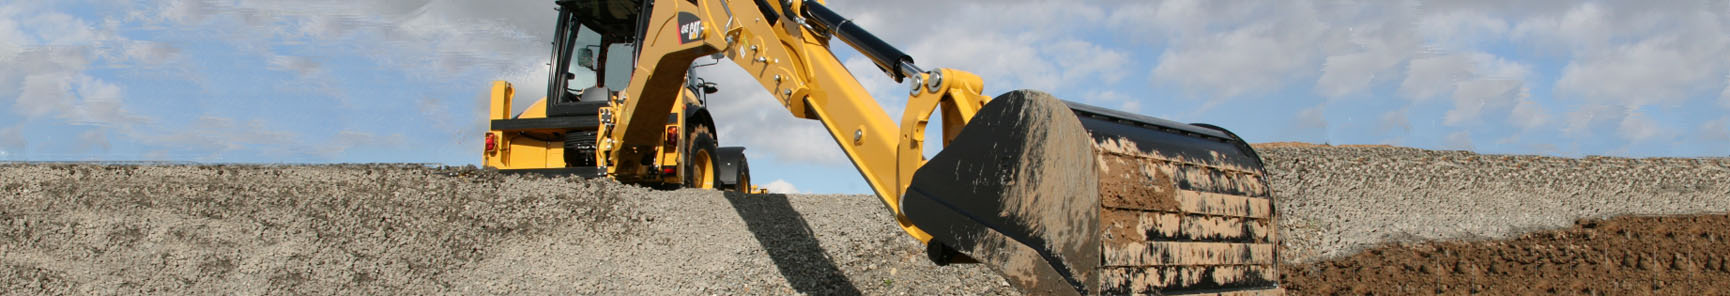 Zemni prace a vykopové prace - Bagrování s mechanizací